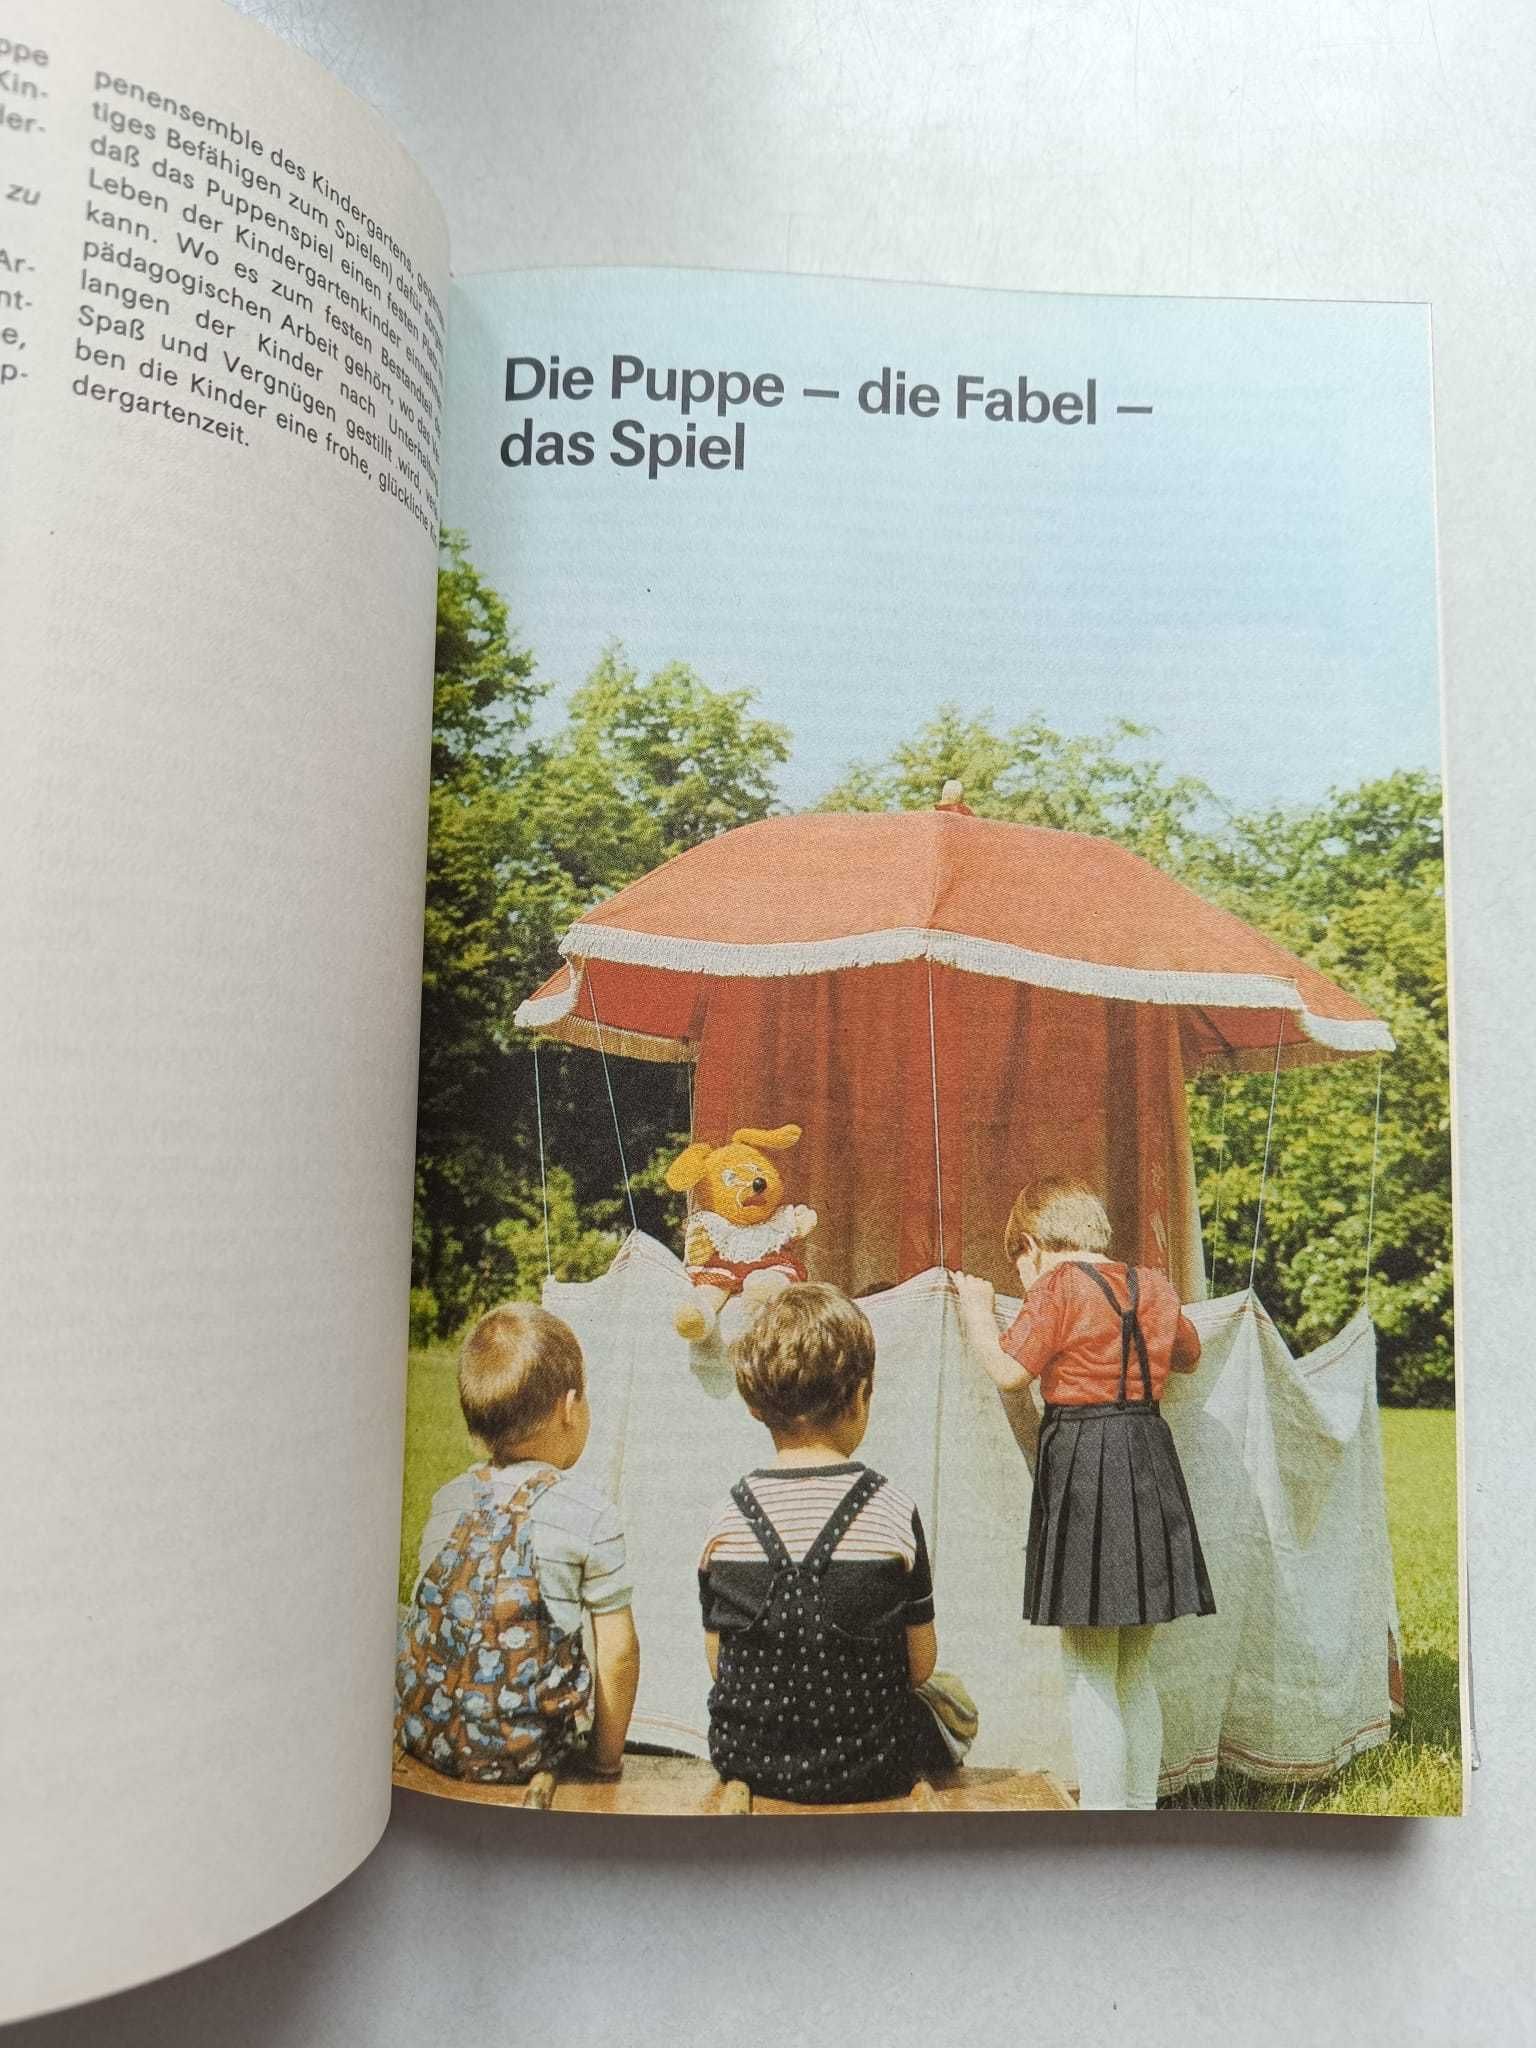 Puppenspiel im Kindergarten - teatrzyk kukiełkowy w przedszkolu - niem